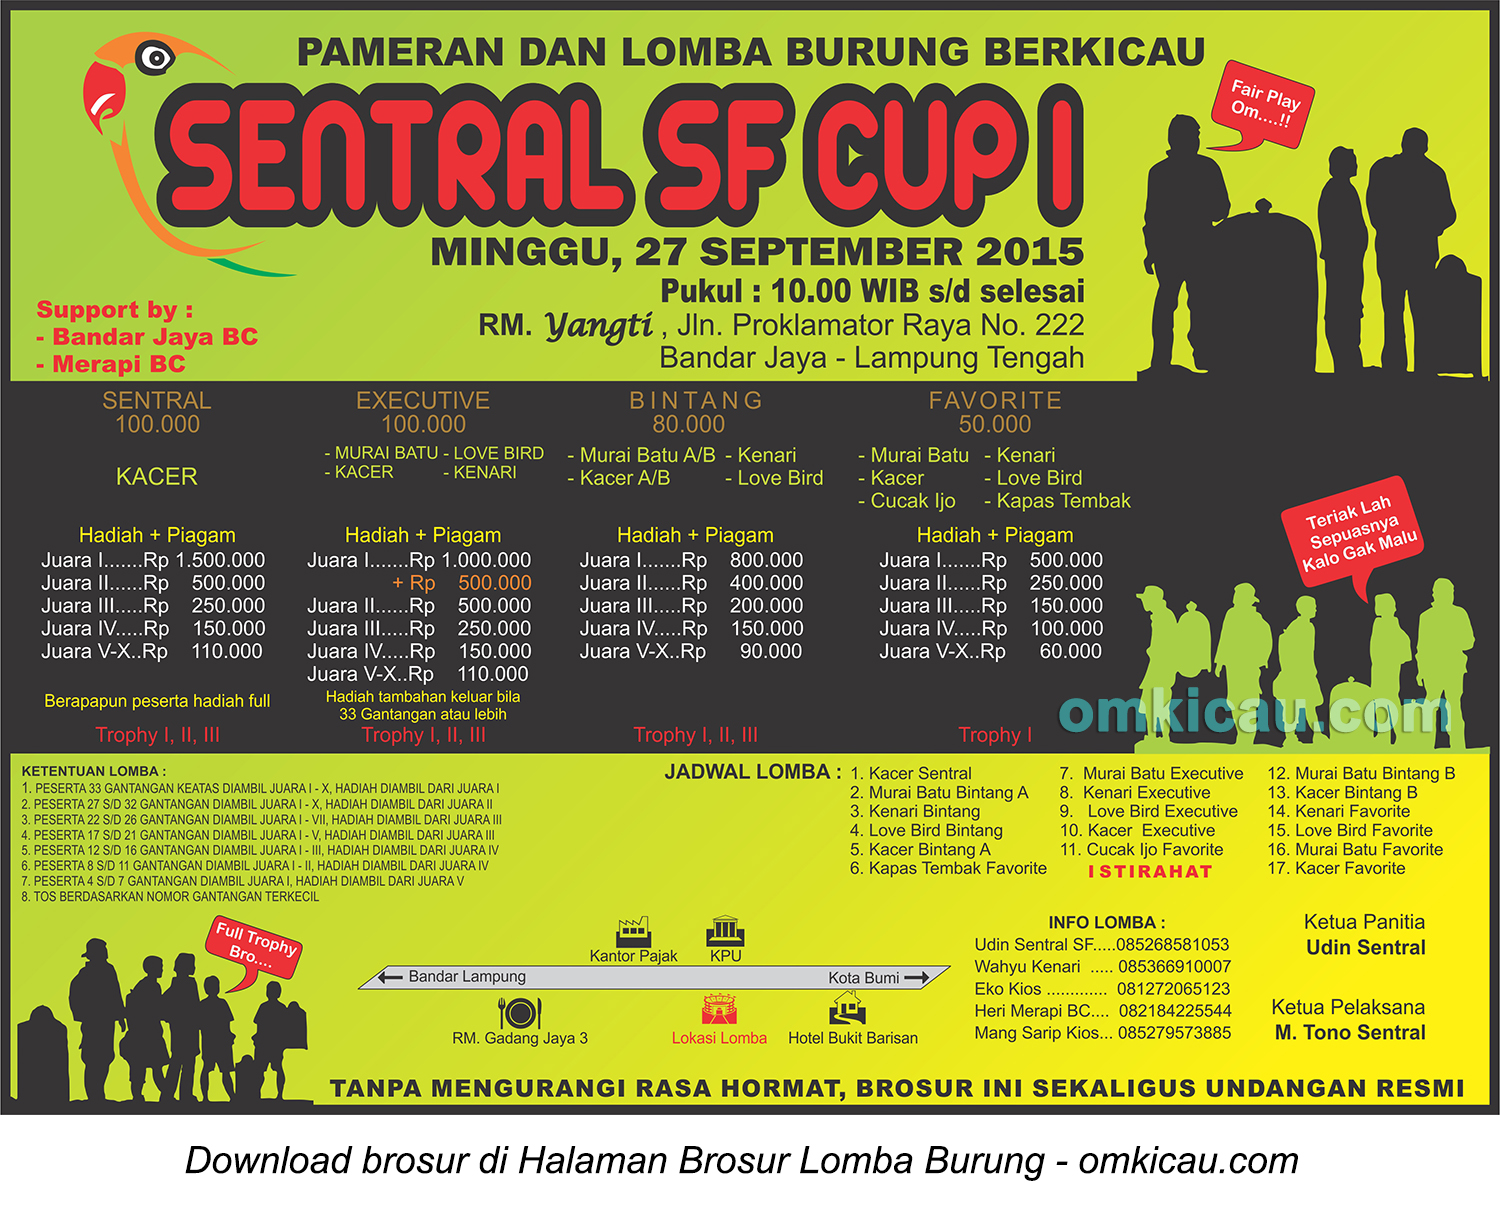 Brosur Lomba Burung Berkicau Sentral SF Cup I, Lampung Tengah, 27 September 2015